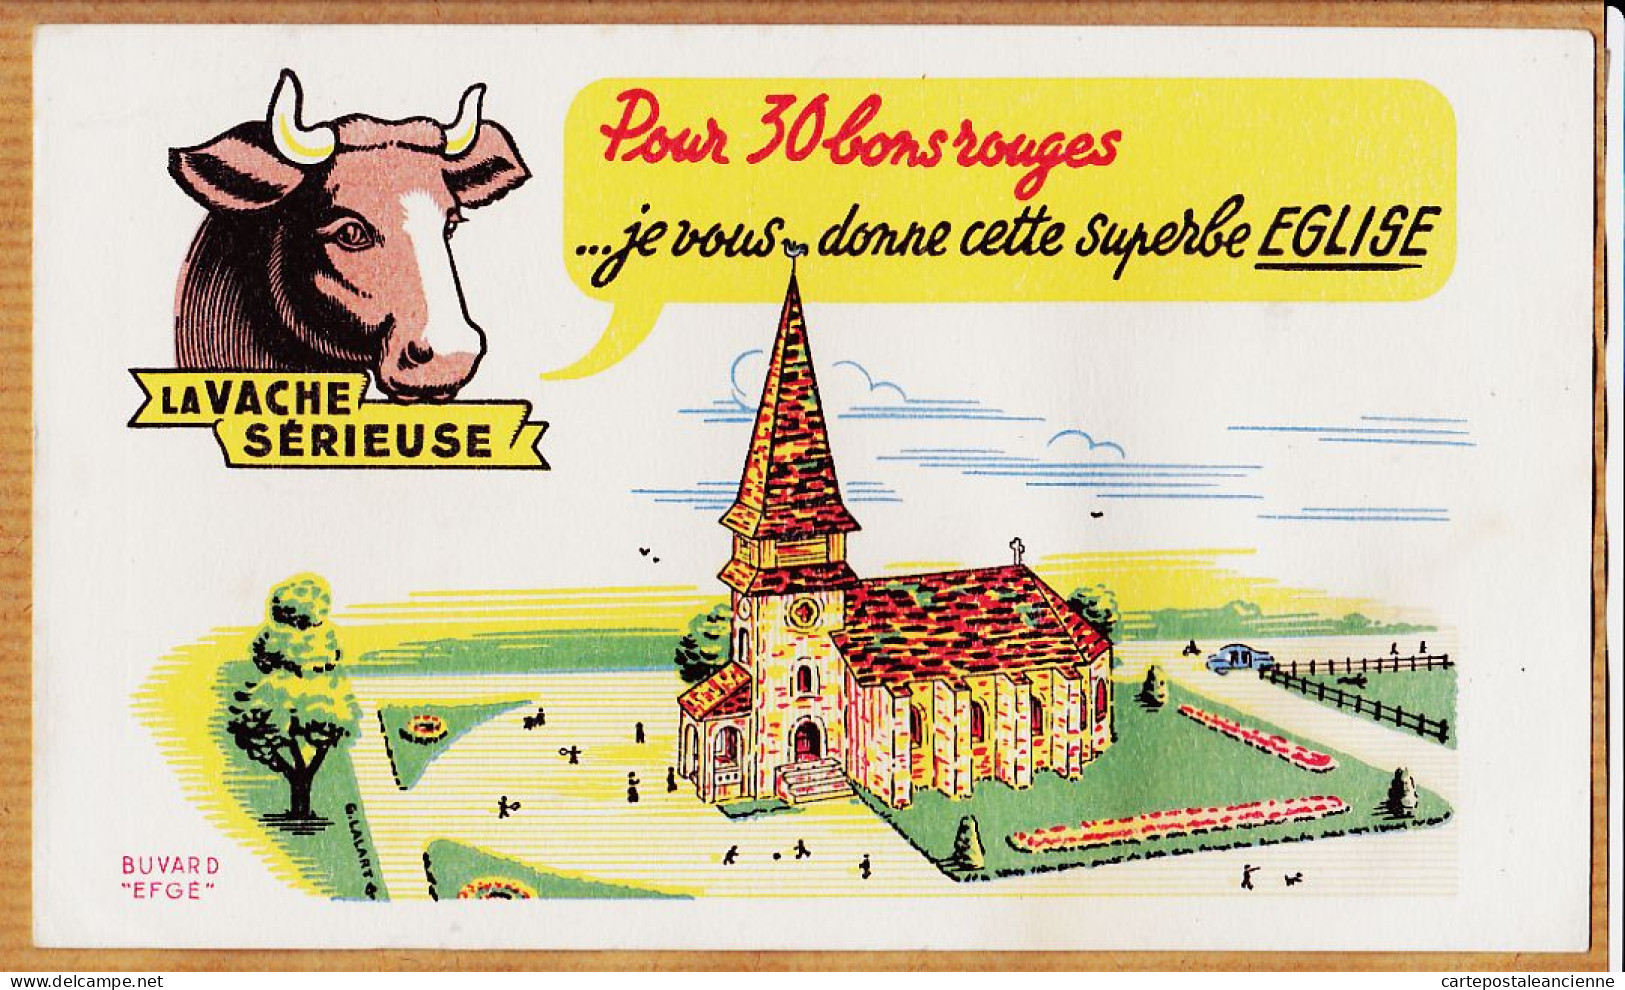 14851 / ⭐ LA VACHE SERIEUSE Crème Double Crème De Gruyère Pour 30 Bons Cette Superbe Eglise / Buvard EFGE 1950s Cppub - Alimentos